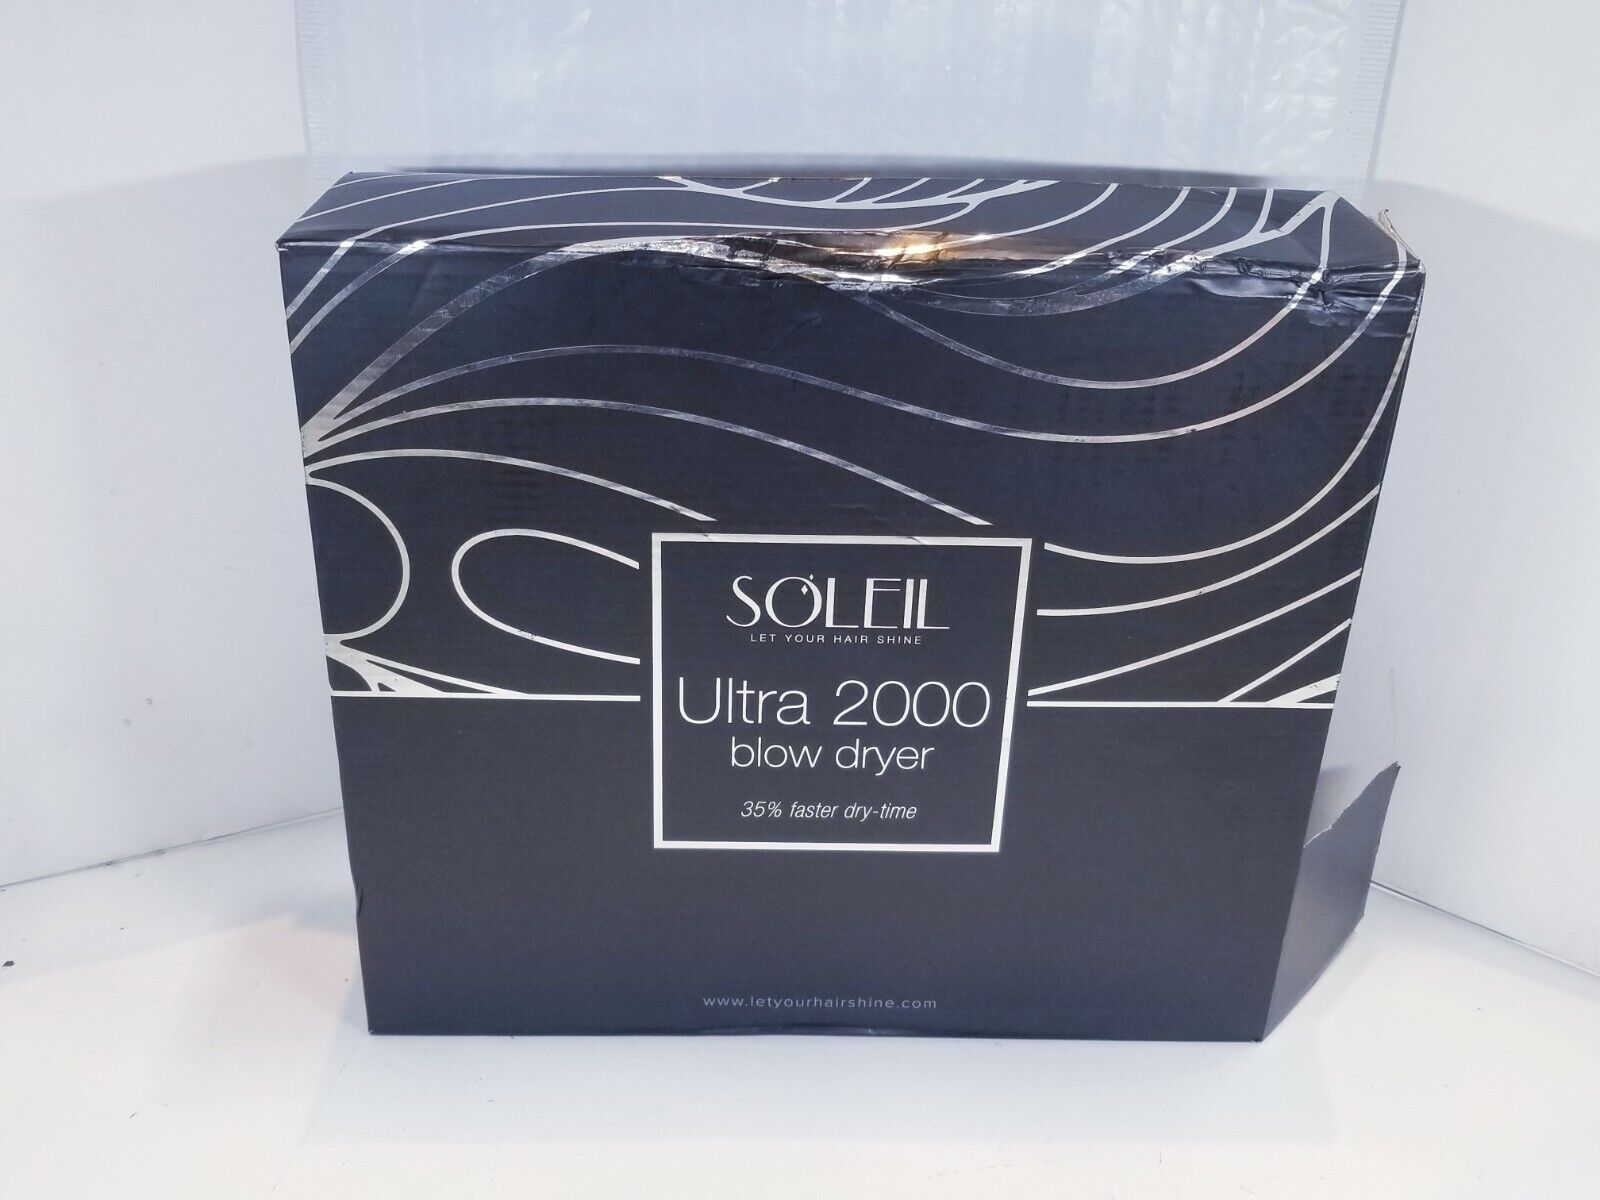 Soleil Let Your Hair Shine Ultra 2000 Blow Dryer -L20BDU-44 Niska cena wyprodukowana w Japonii